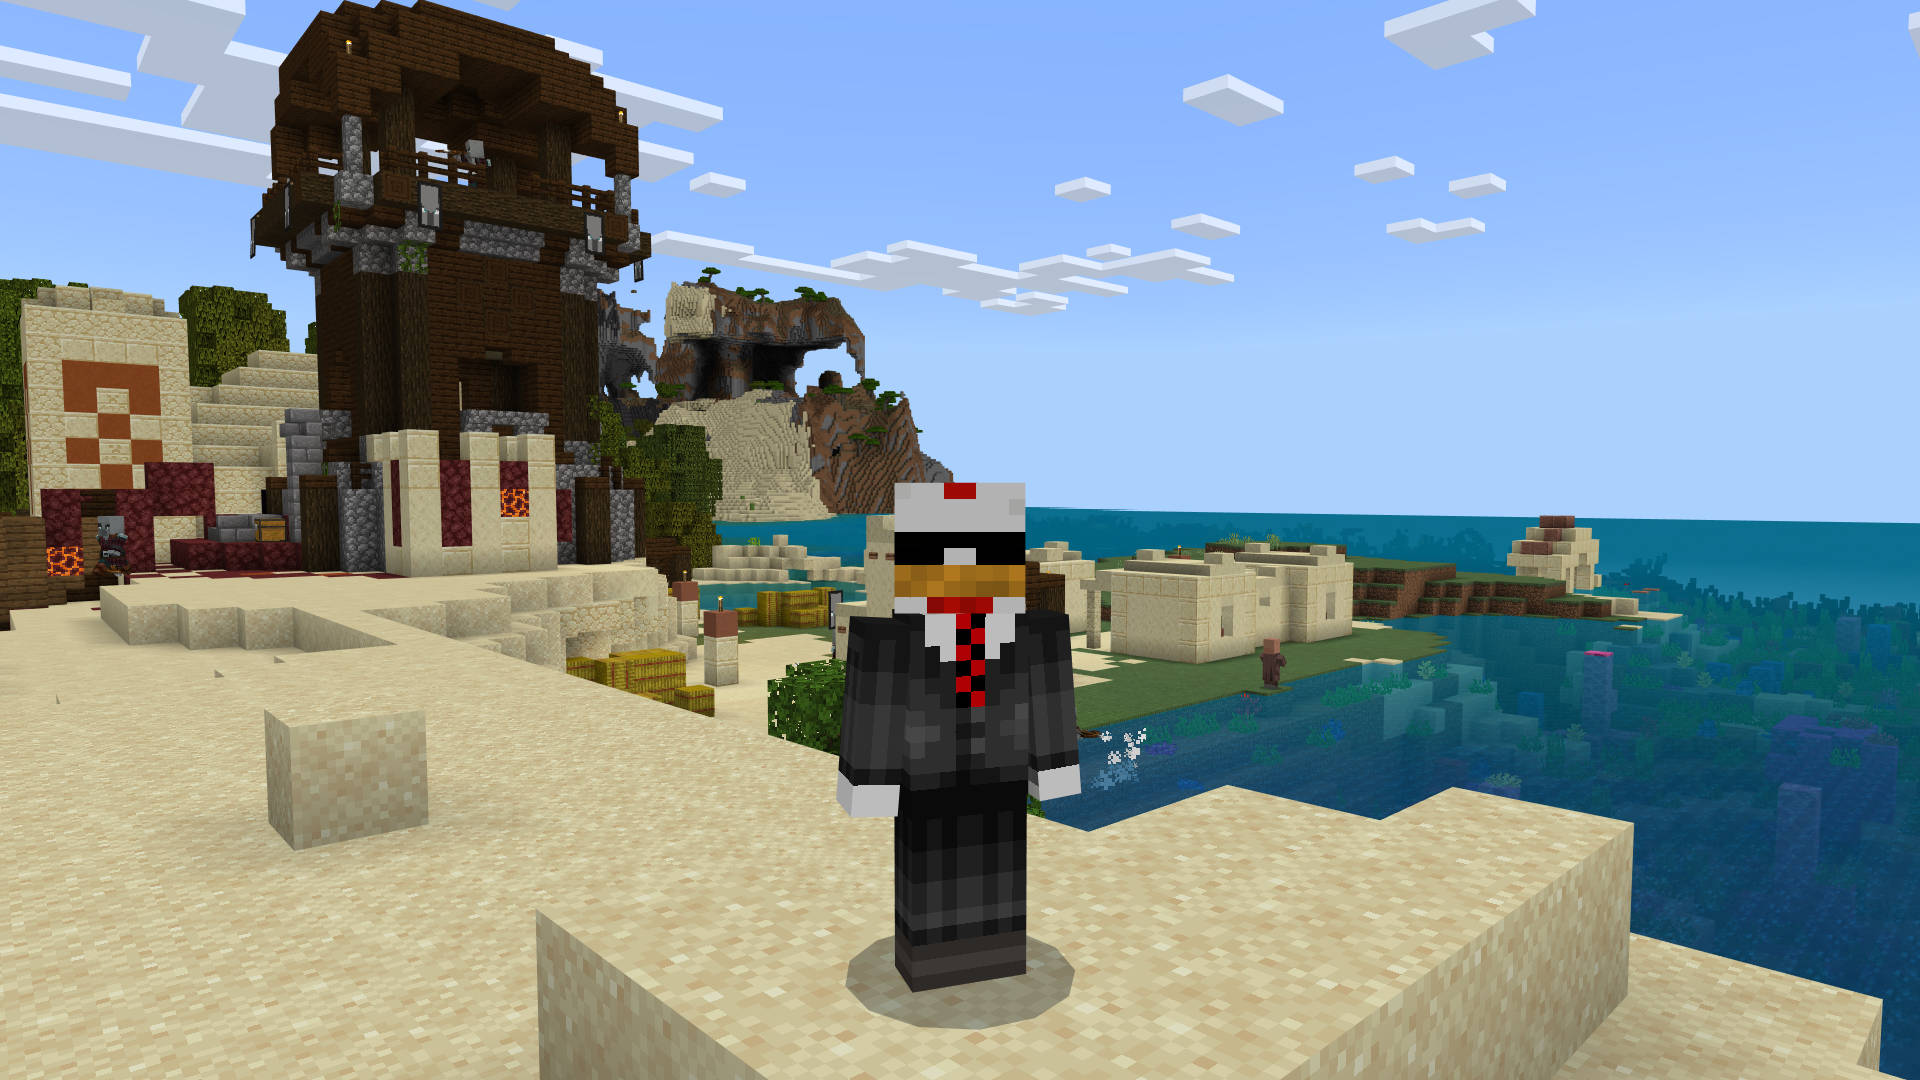 सर्वश्रेष्ठ माइनक्राफ्ट बीज: सूट में एक मुर्गी समुद्र तट पर इलैगर टॉवर के पास खड़ी है।